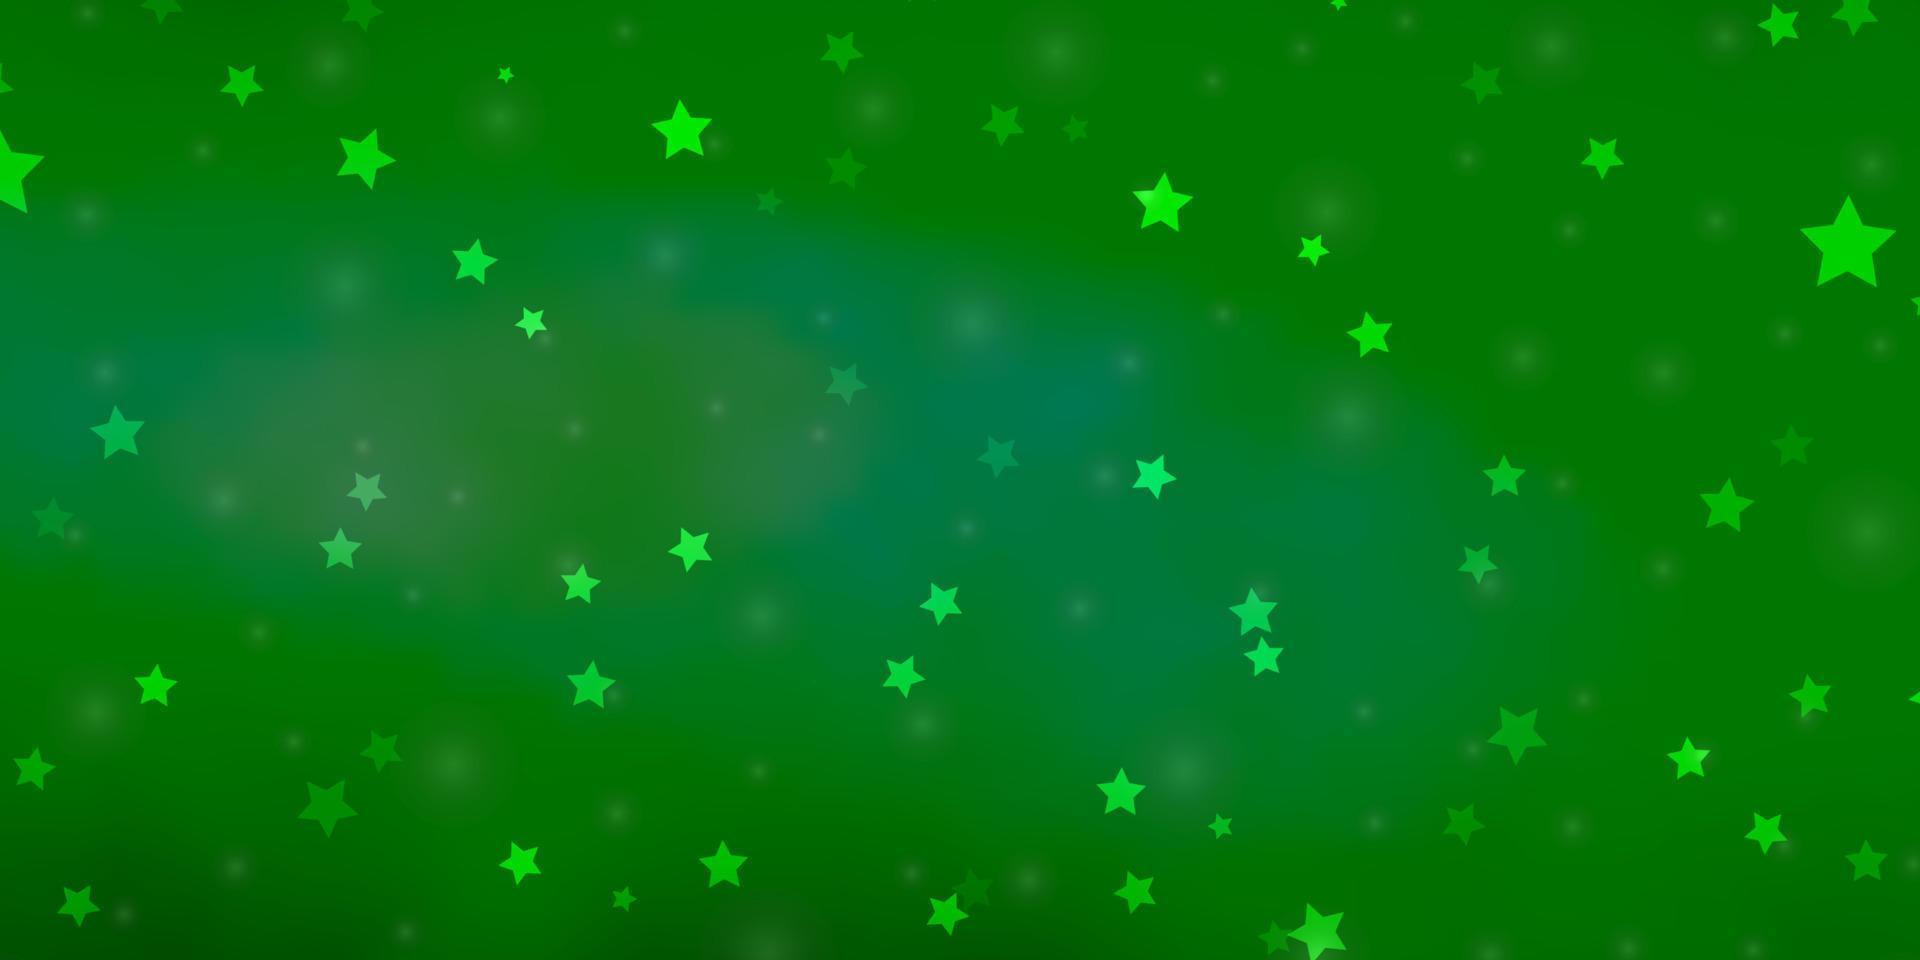 ljusgrön vektorstruktur med vackra stjärnor. vektor